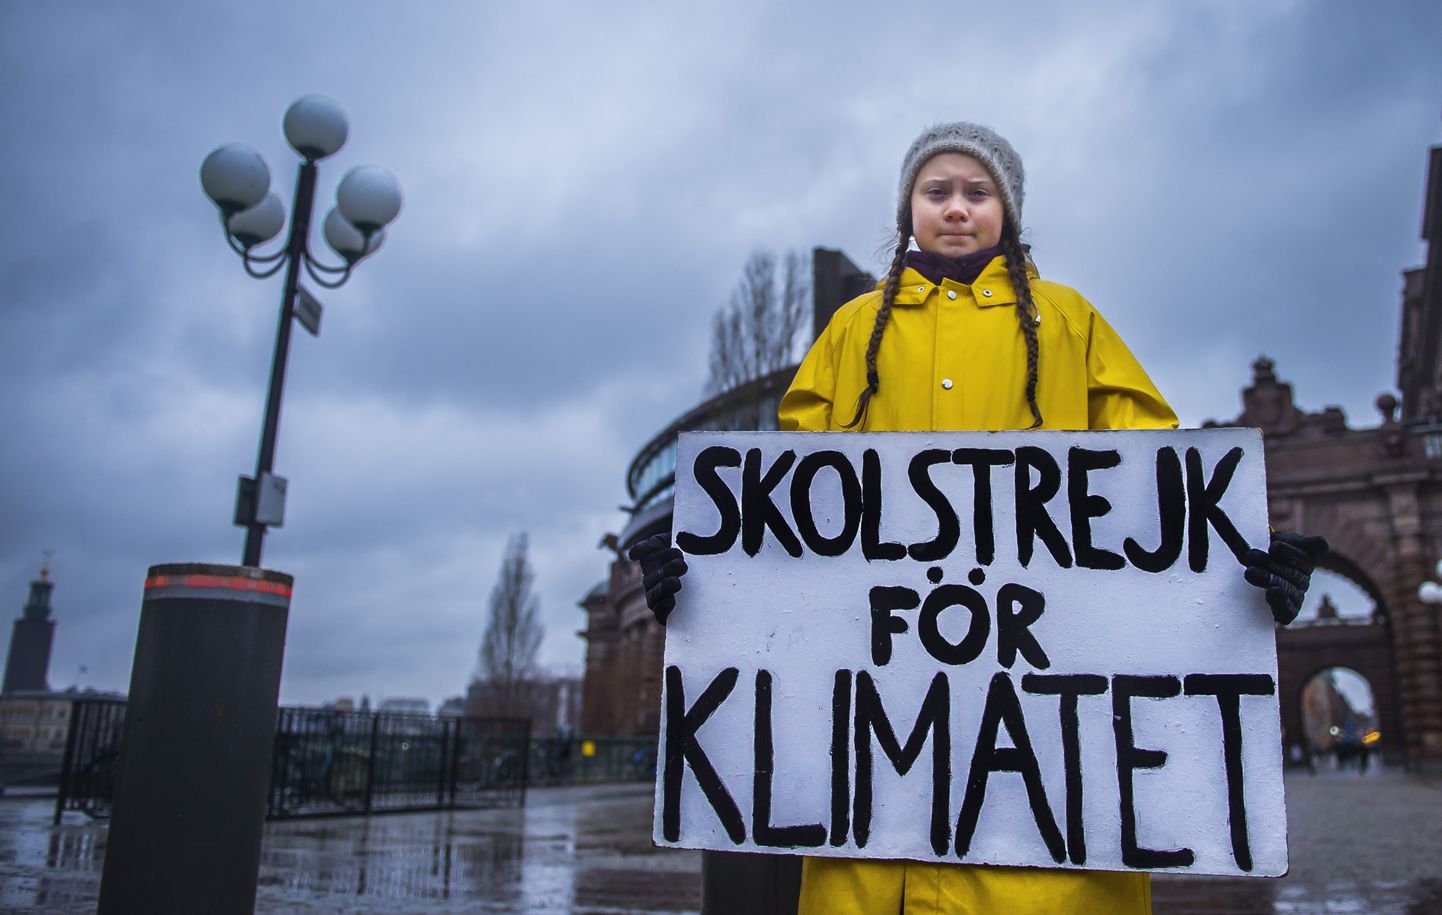 Greta Thunbergi kliimaprotest 2018. aasta novembris Stockholmis Rootsi parlamendi juures